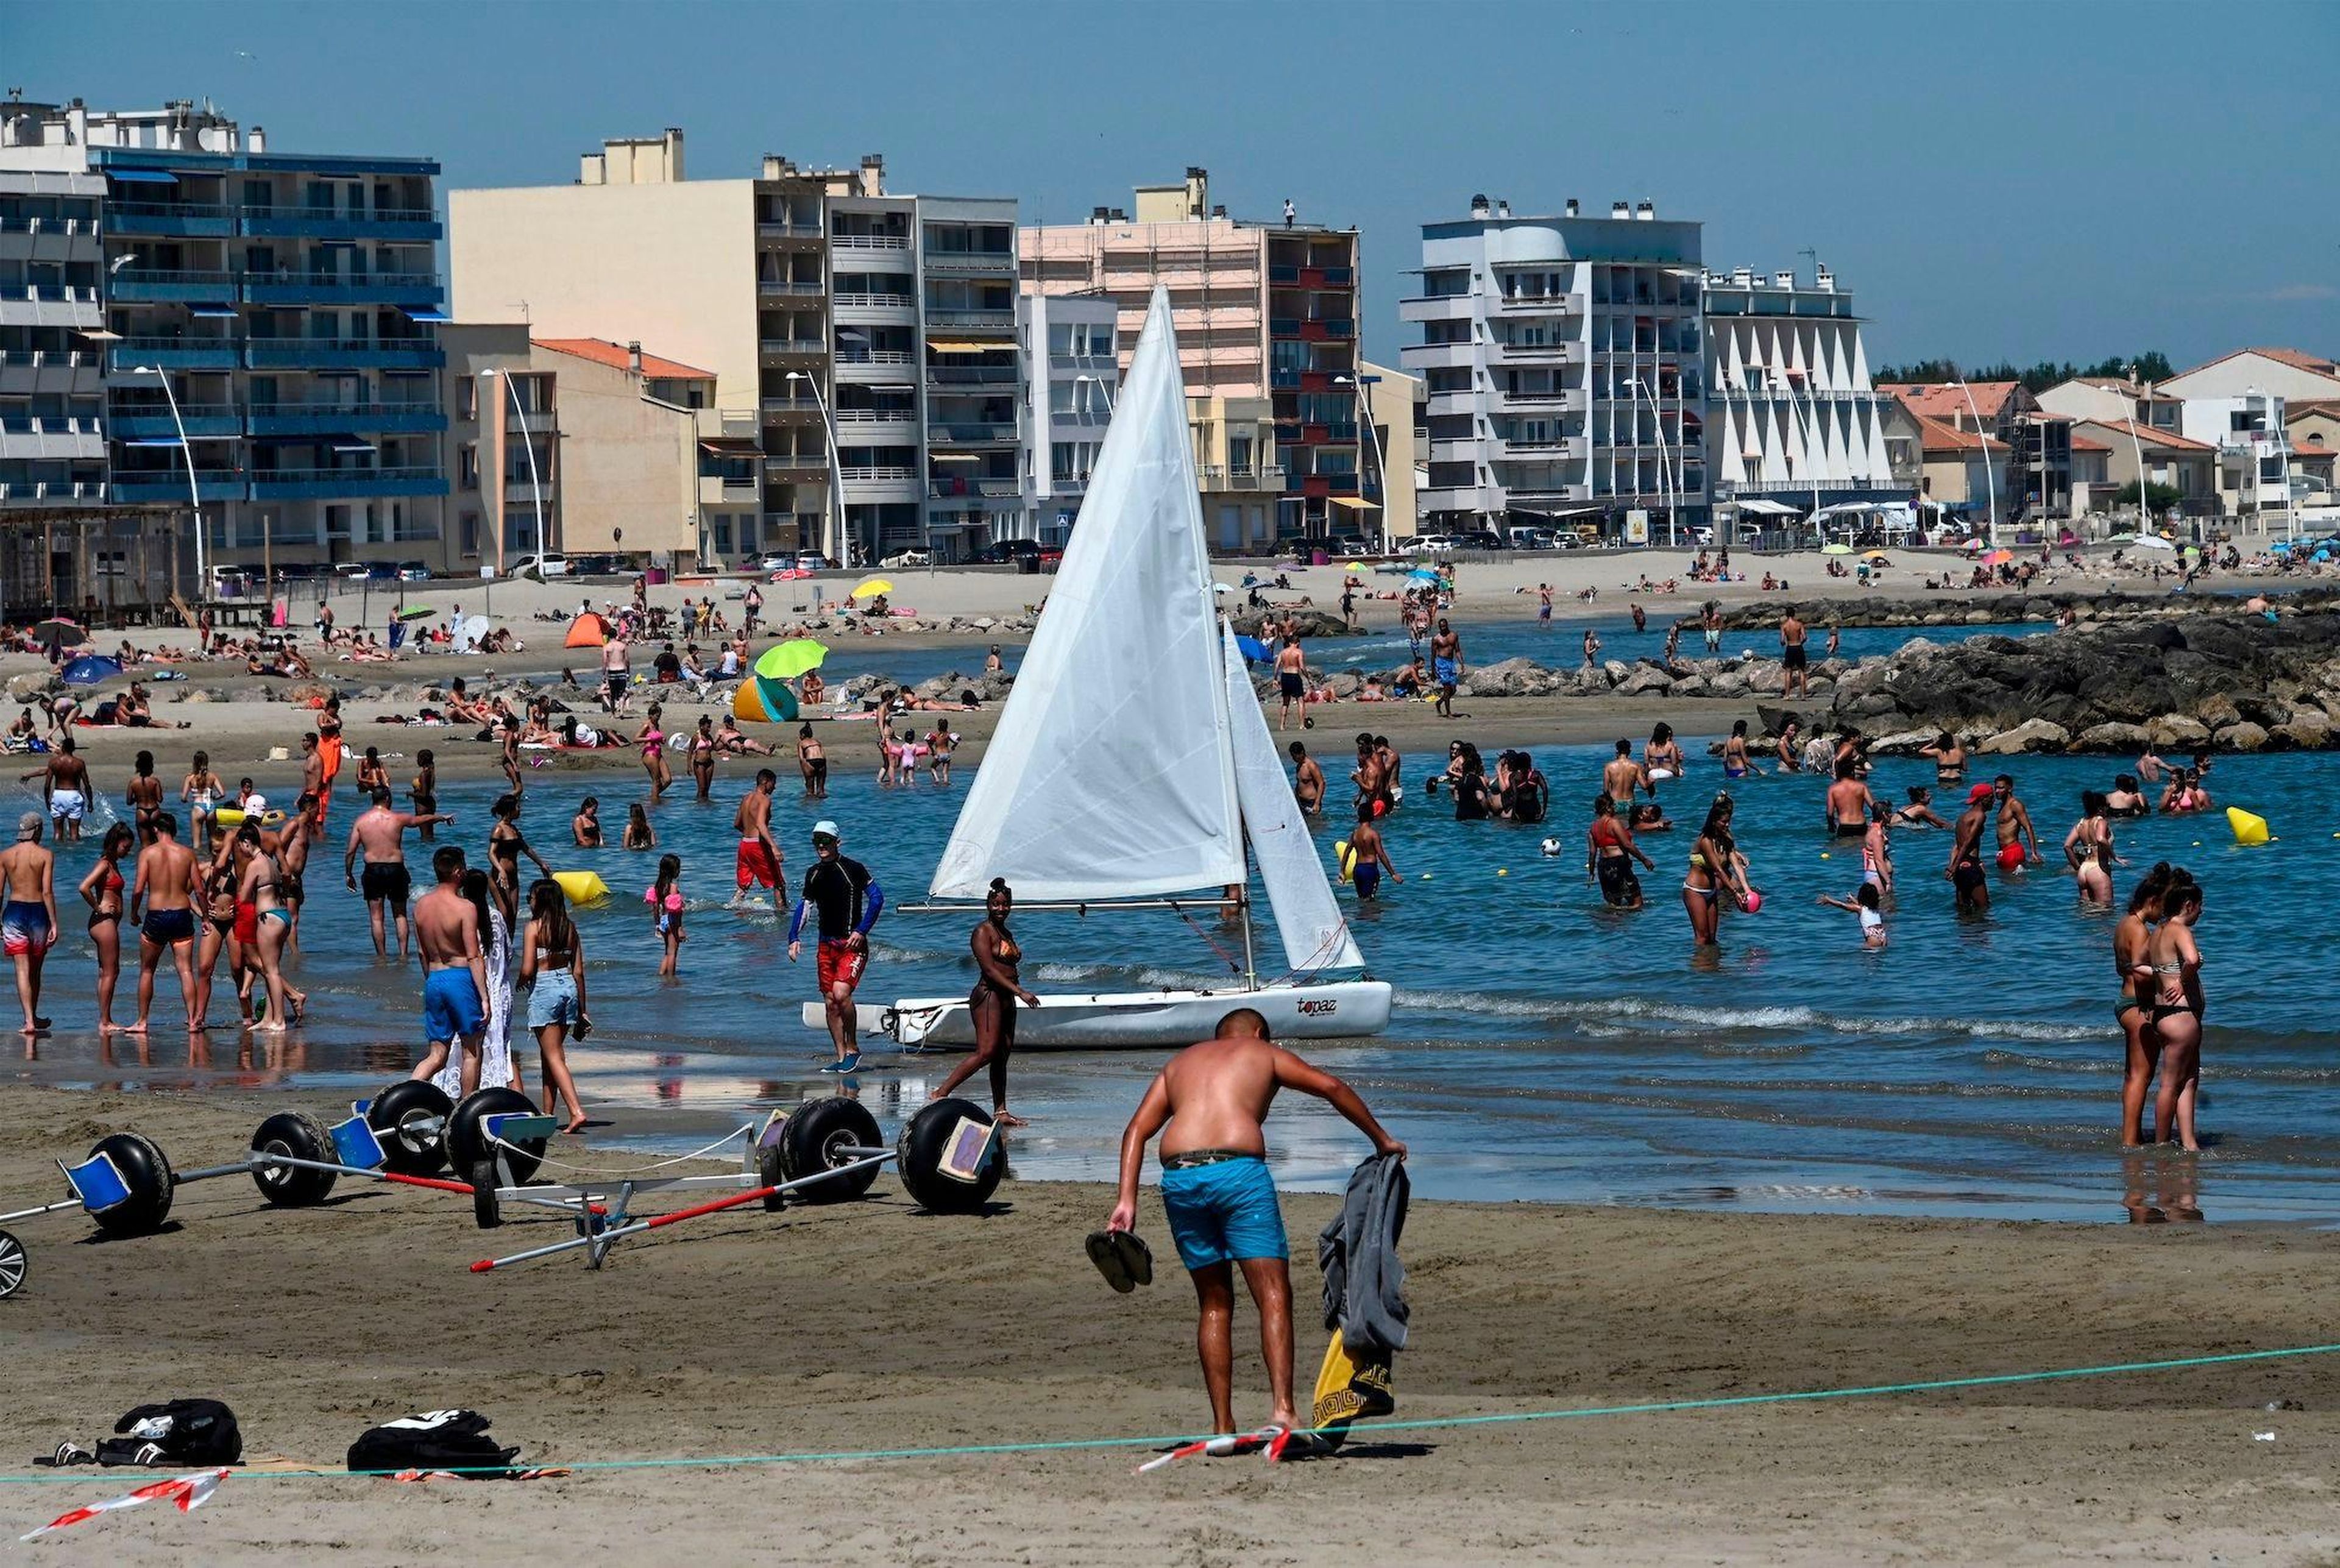 La gente se refresca en el mar durante una ola de calor en una playa de Palavas-les-Flots, en el sur de Francia, el 23 de junio de 2020